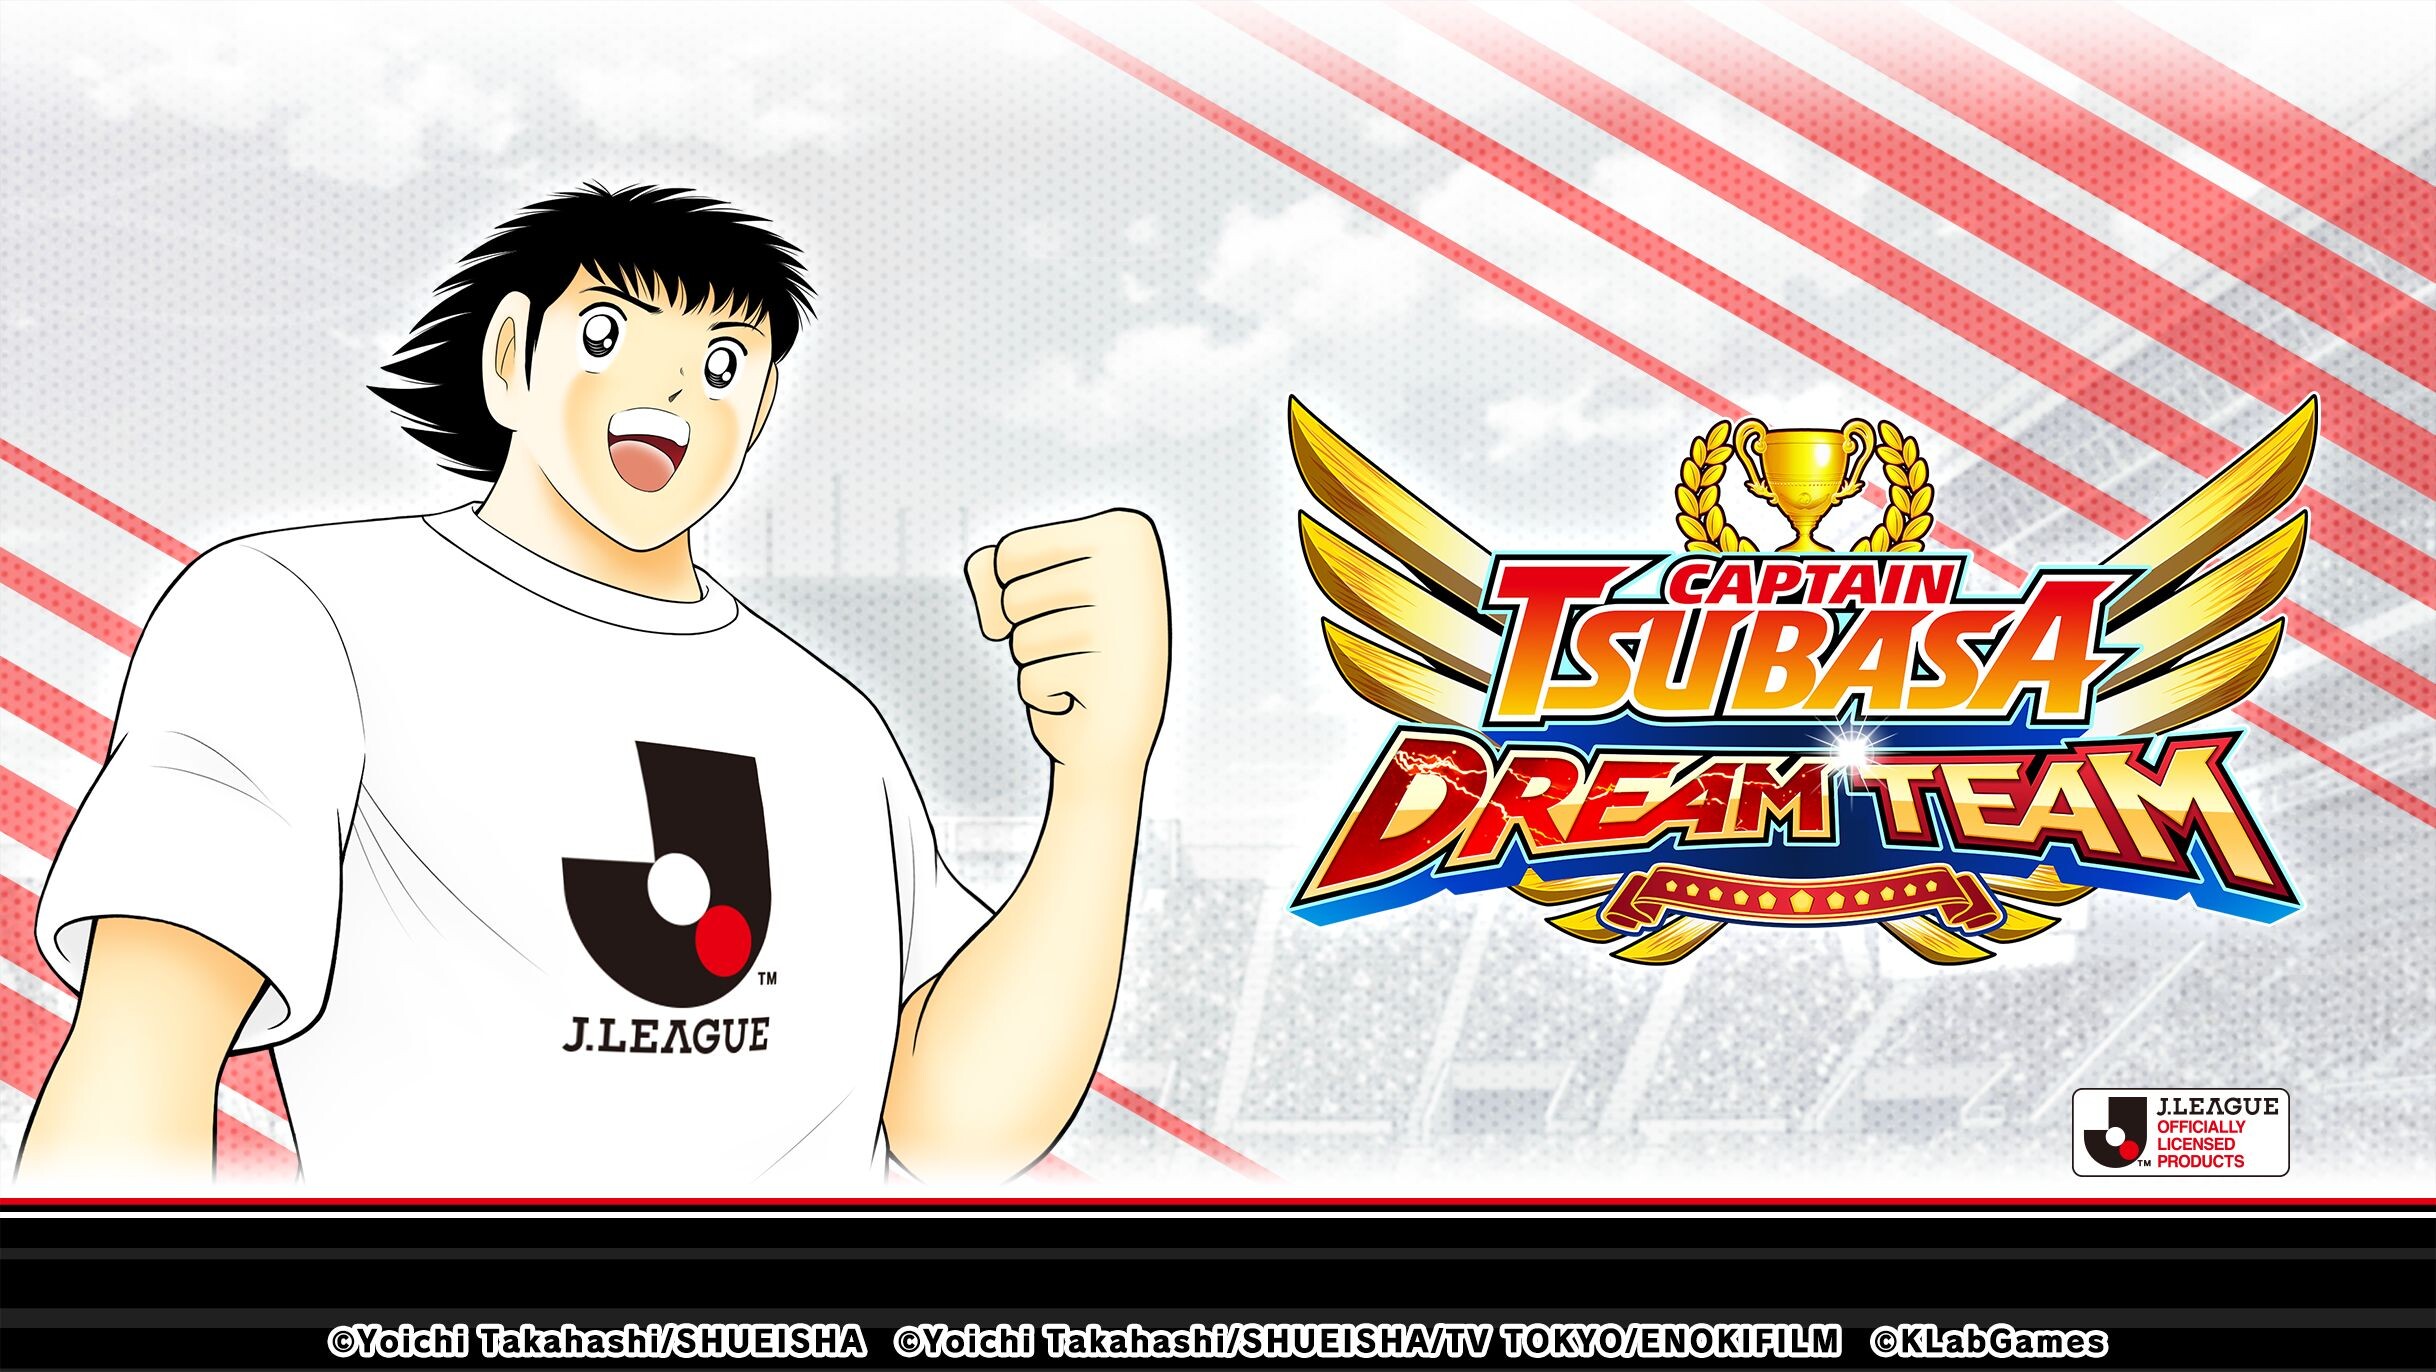 เกม "กัปตันซึบาสะ: ดรีมทีม (Captain Tsubasa: Dream Team)" เปิดตัวตัวละครผู้เล่นใหม่ในชุดยูนิฟอร์มทางการ J.League 2021 แล้ววันนี้!